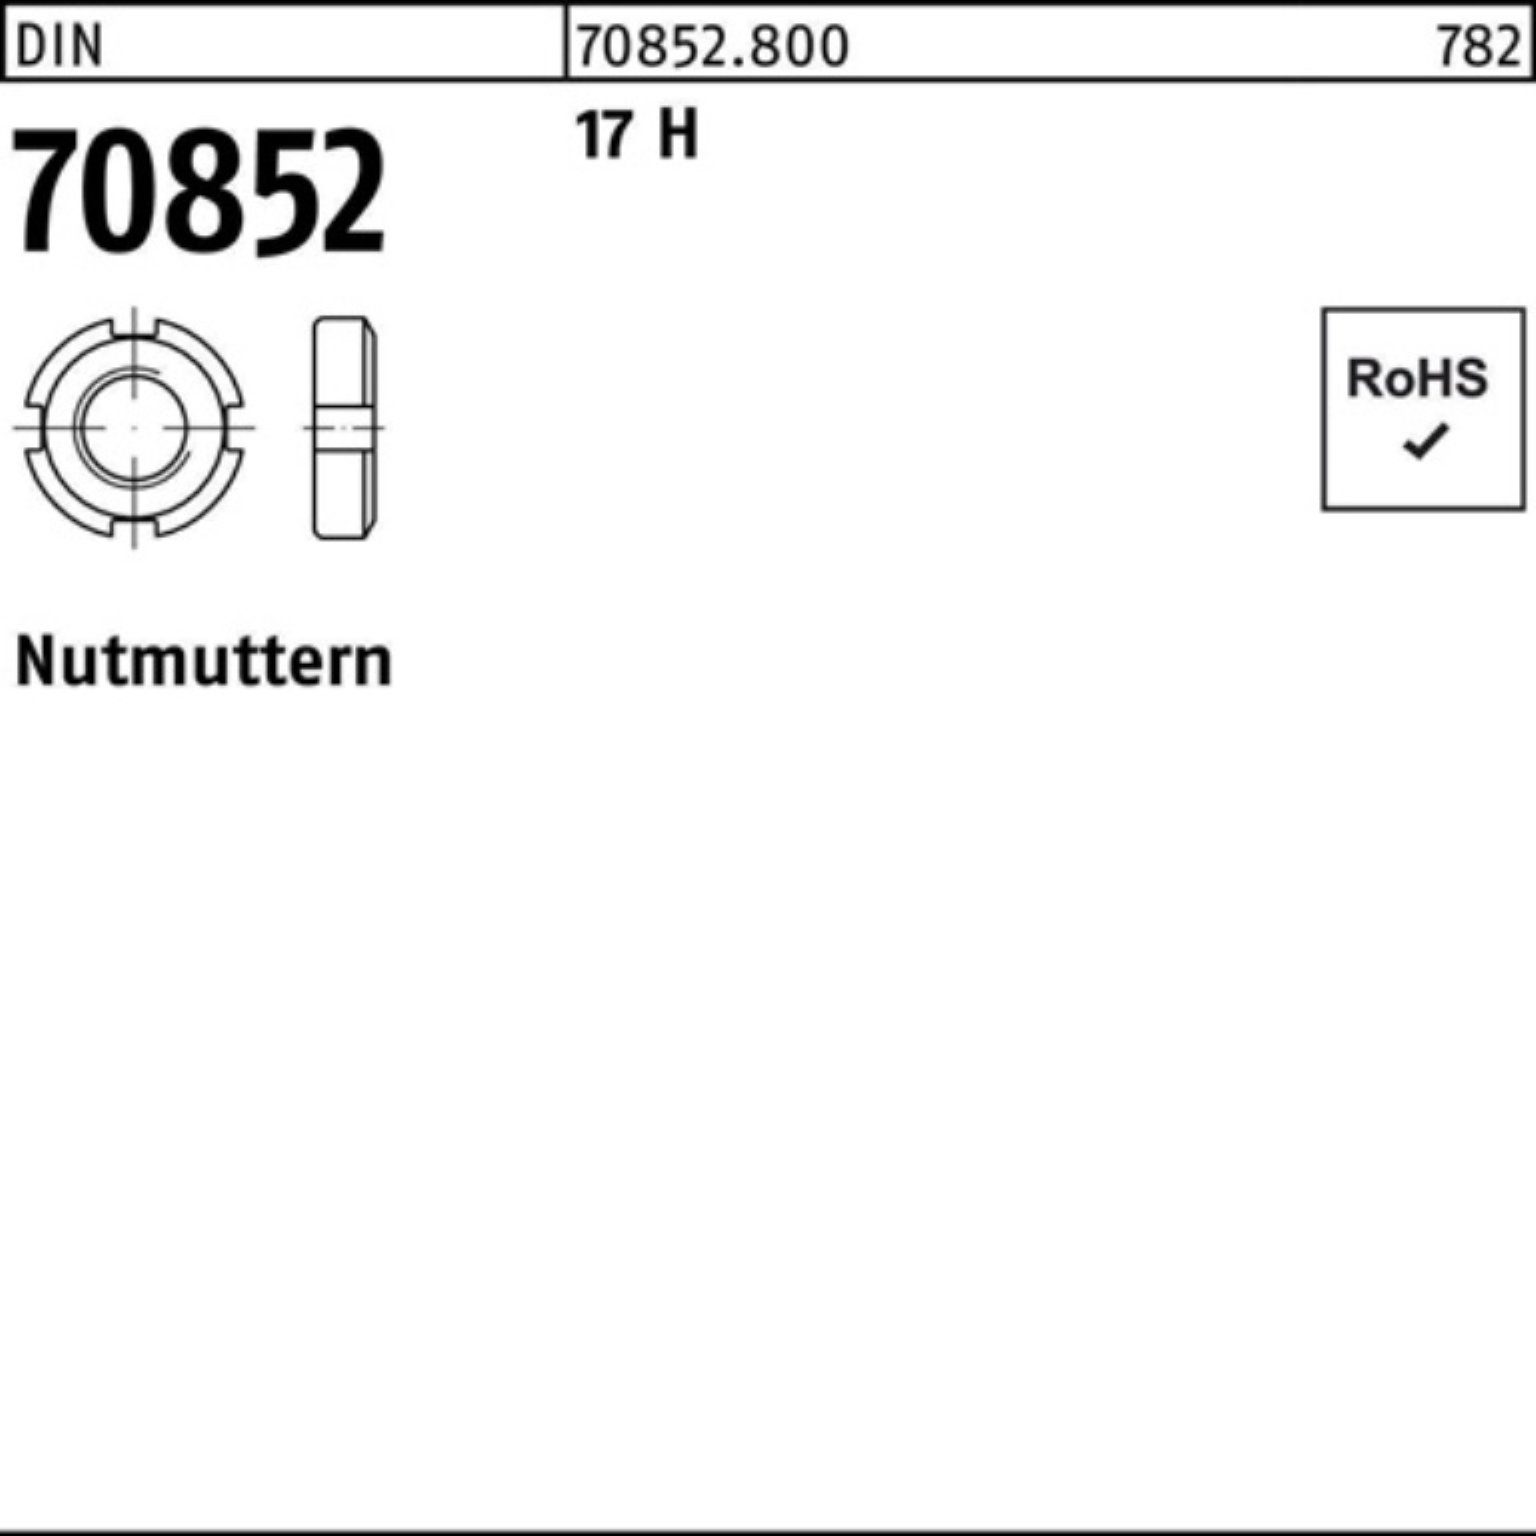 Reyher Nutmutter 100er Pack Nutmutter DIN 70852 M95x 1,5 17 H 1 Stück DIN 70852 17 H N